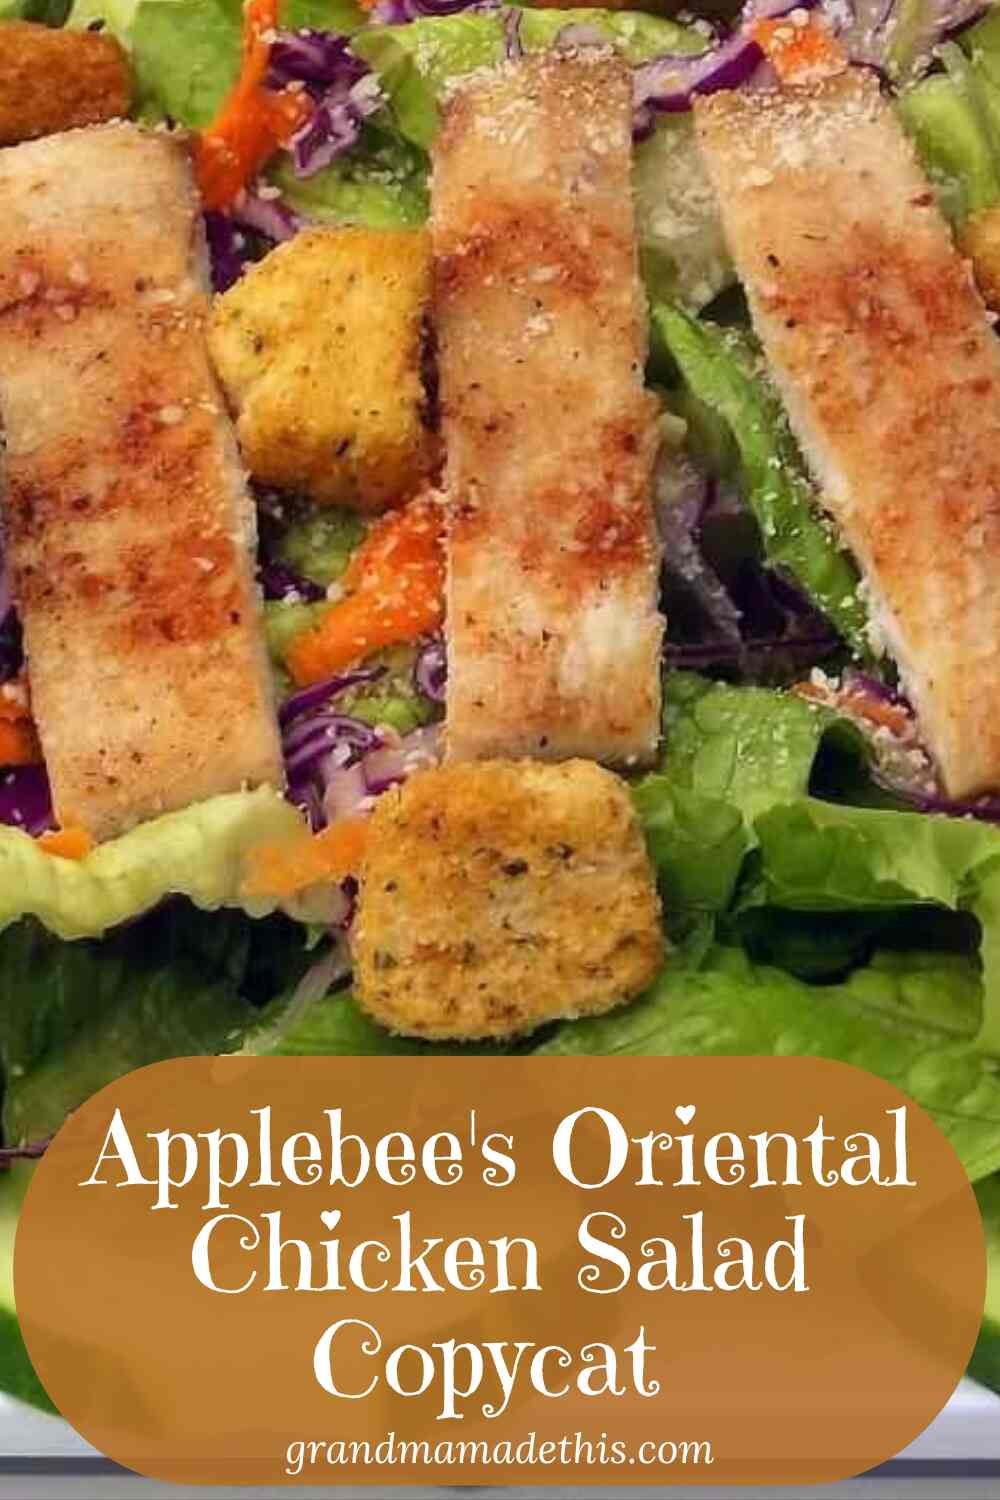 Applebee's Oriental Chicken Salad Copycat